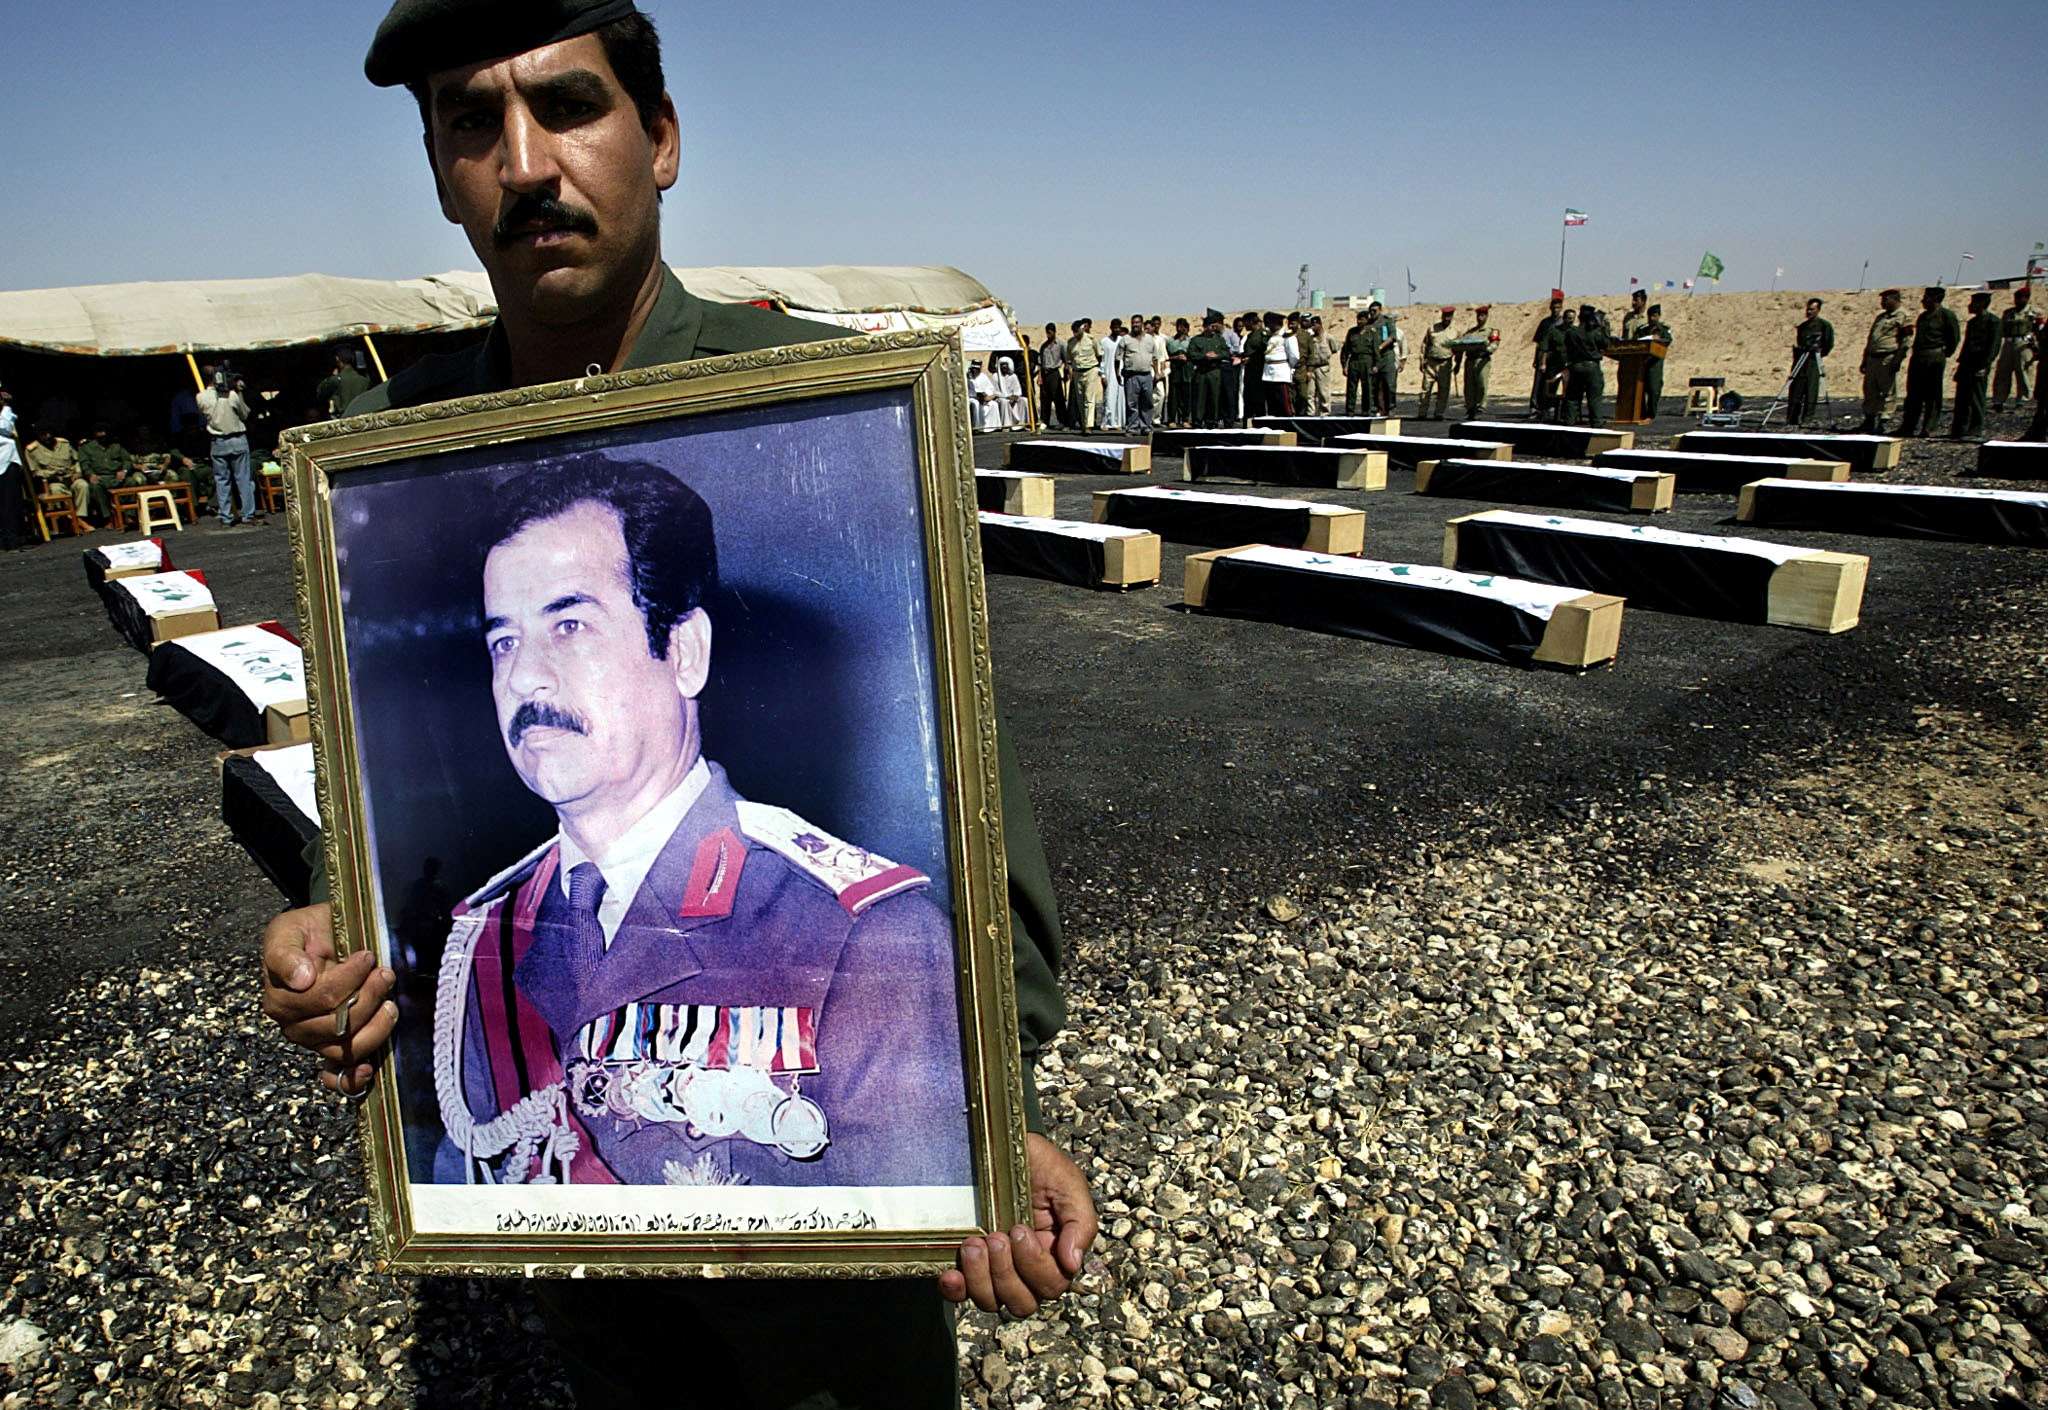 أثر صدام حسين لا يزال قائما في القوانين